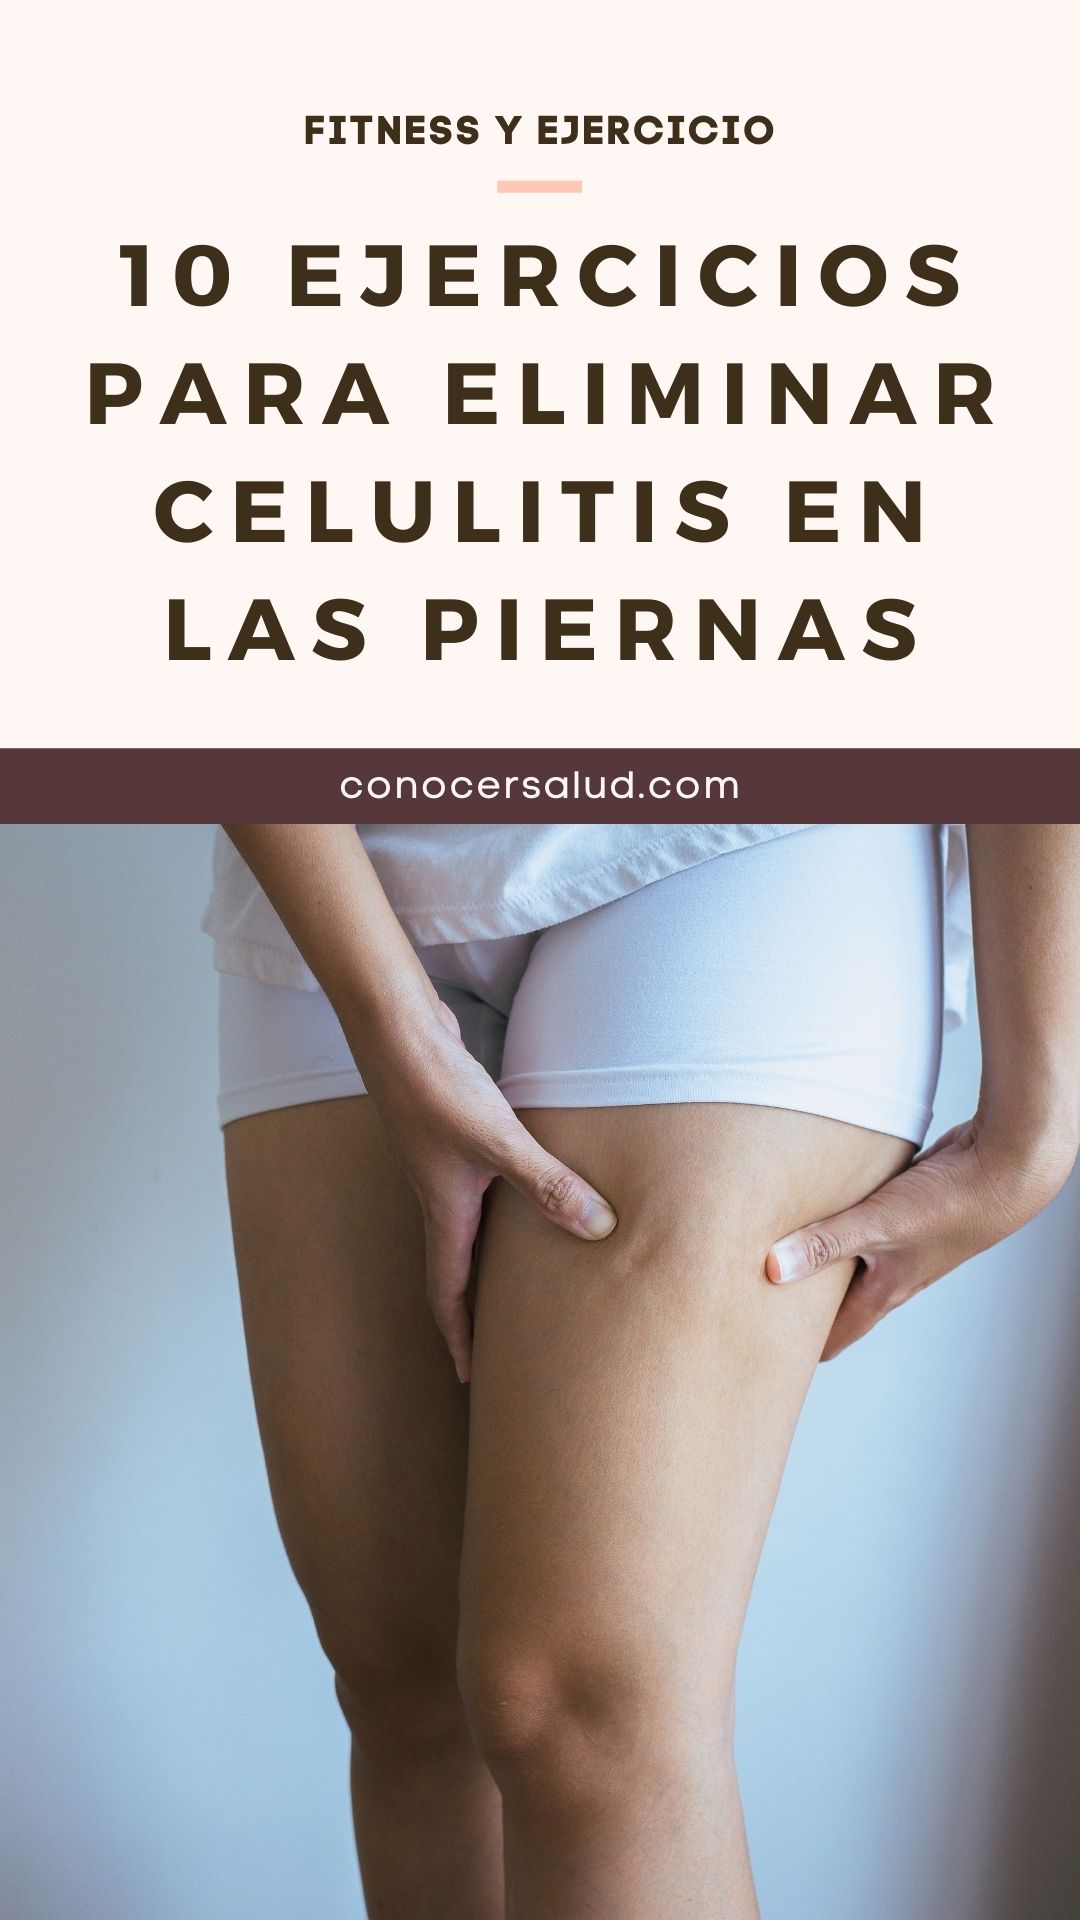 10 Ejercicios para eliminar celulitis en las piernas